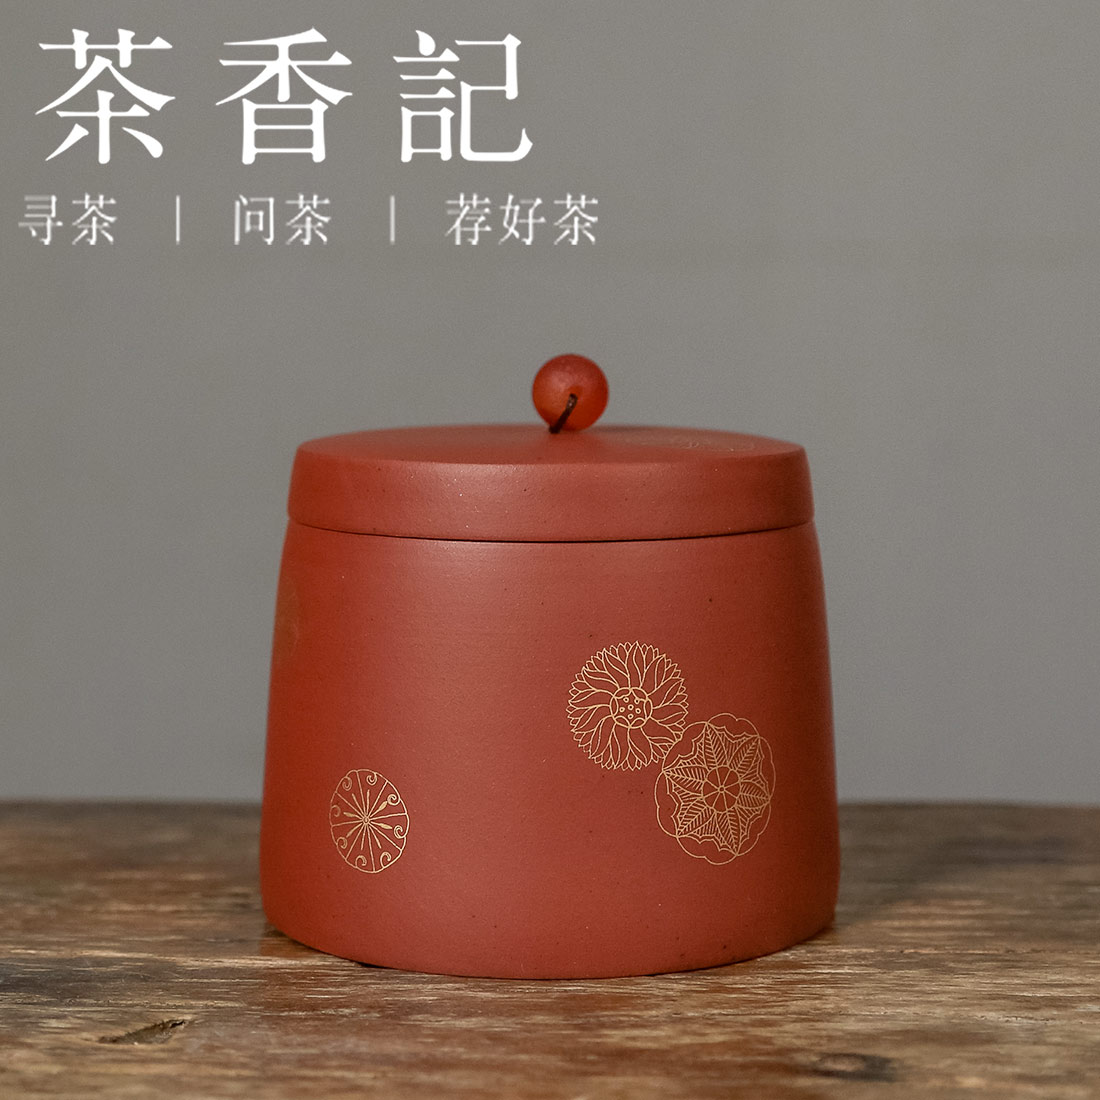 茶香记 紫砂清水泥 皮球花茶叶罐 好泥料打底 精致好用 宜用宜品